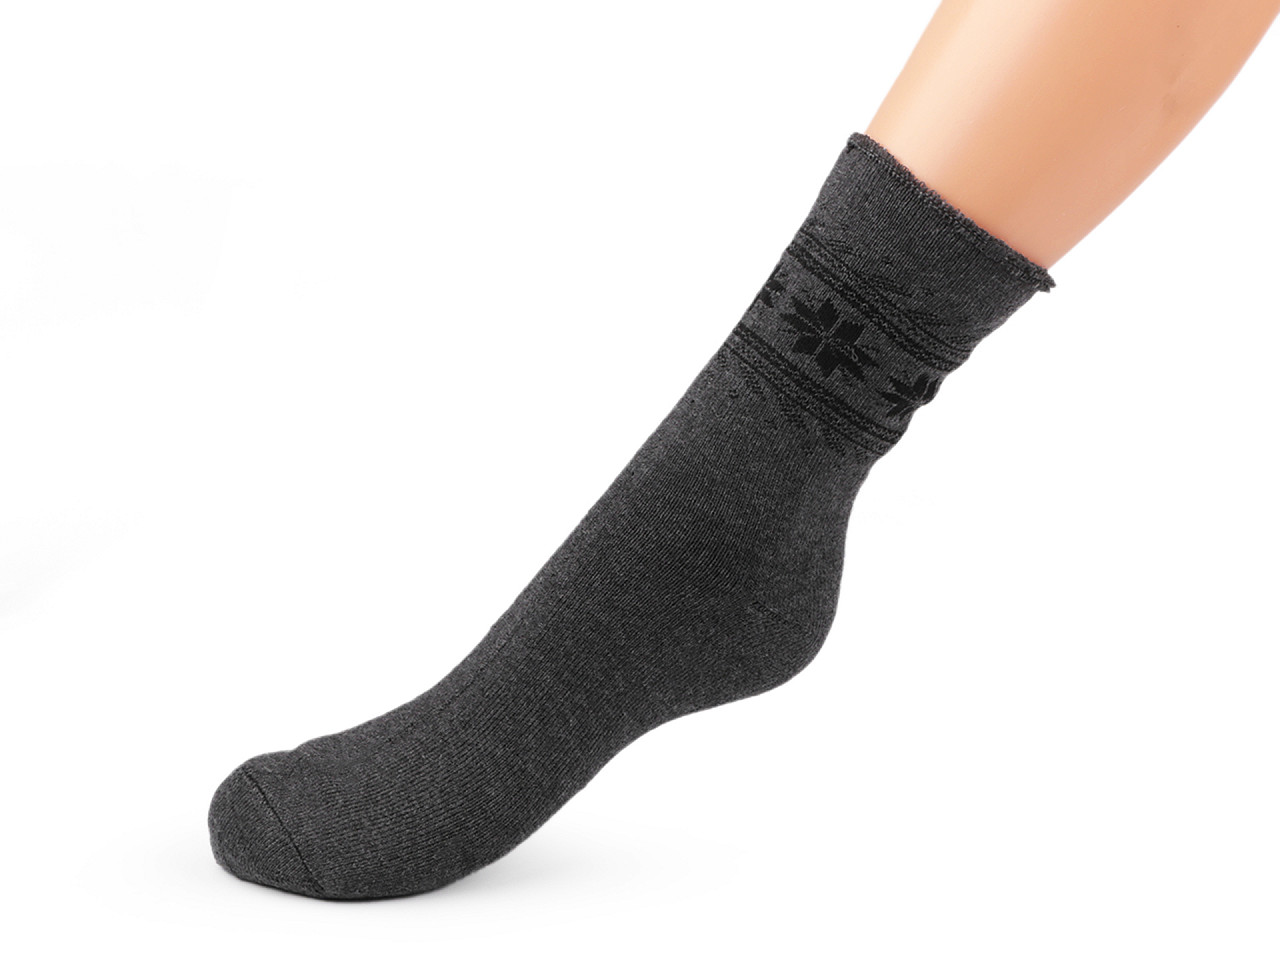 Herren Socken mit Gesundheitsbund Thermo, Größe: 43 - 46, Mix zufällig, 2 Paar